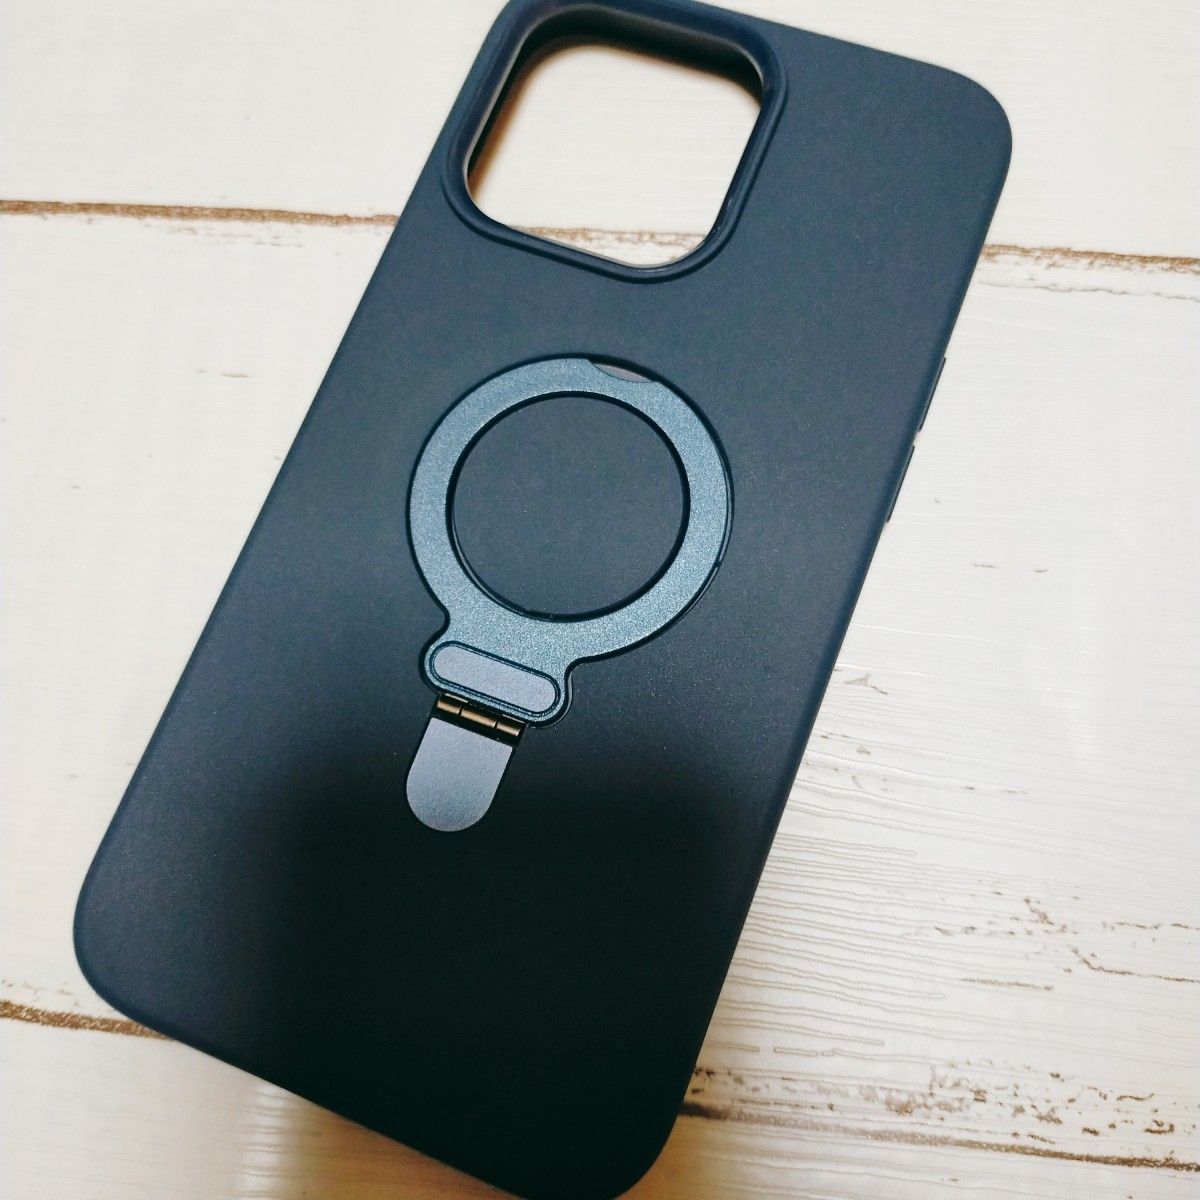 iPhone 15 Pro Max用 ケース MagSafe対応 ワイヤレス充電 耐衝撃 ブルー ネイビー